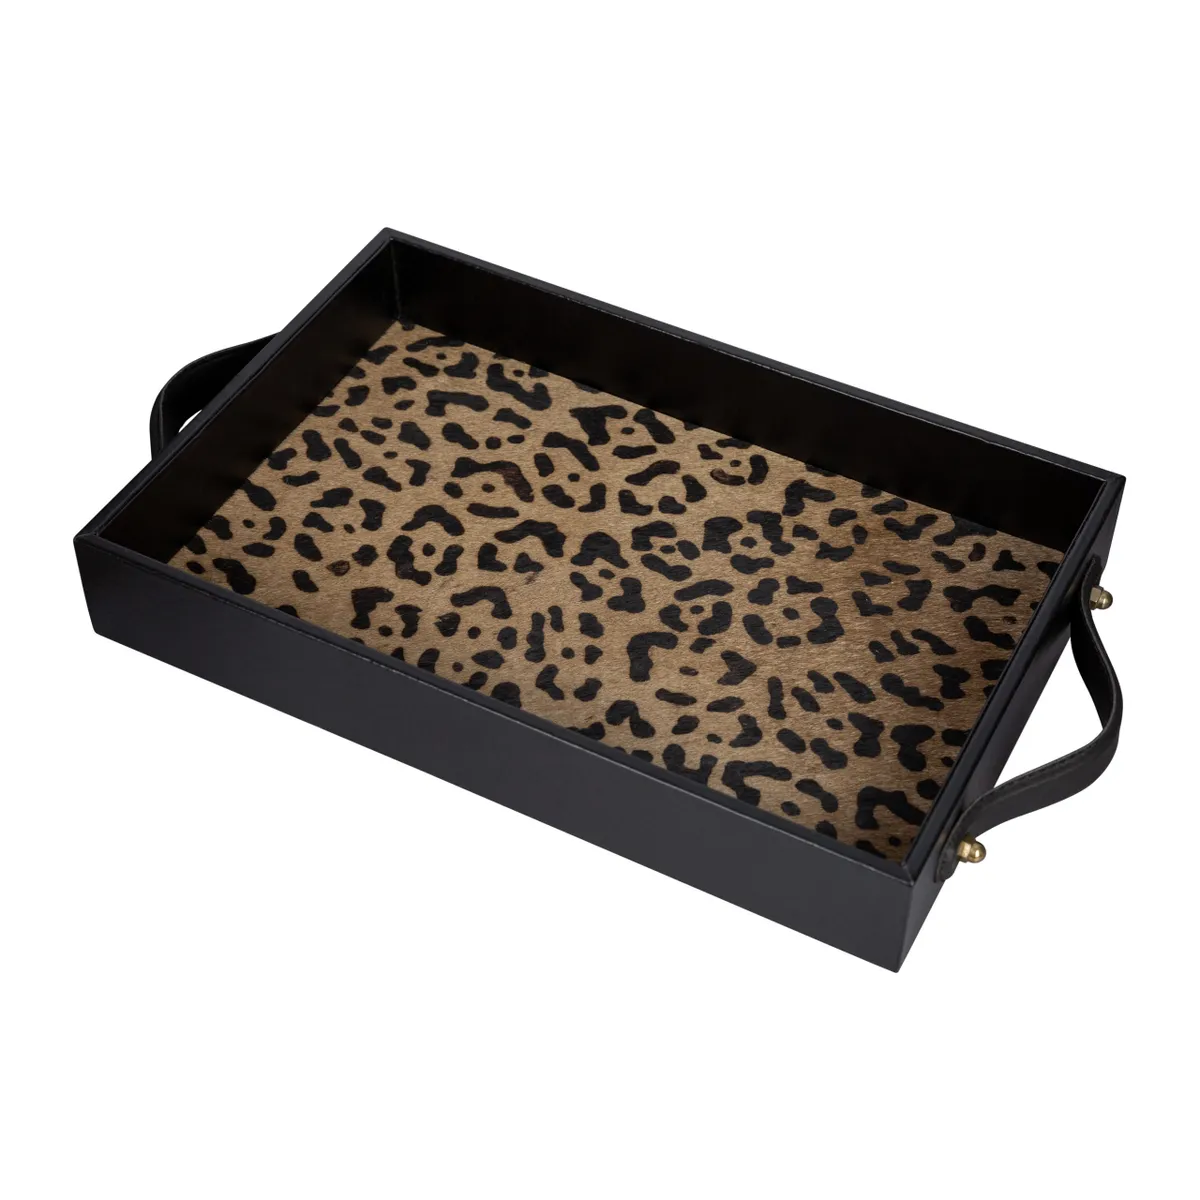 A by AMARA Leopard Suede Tray, £65, Amara